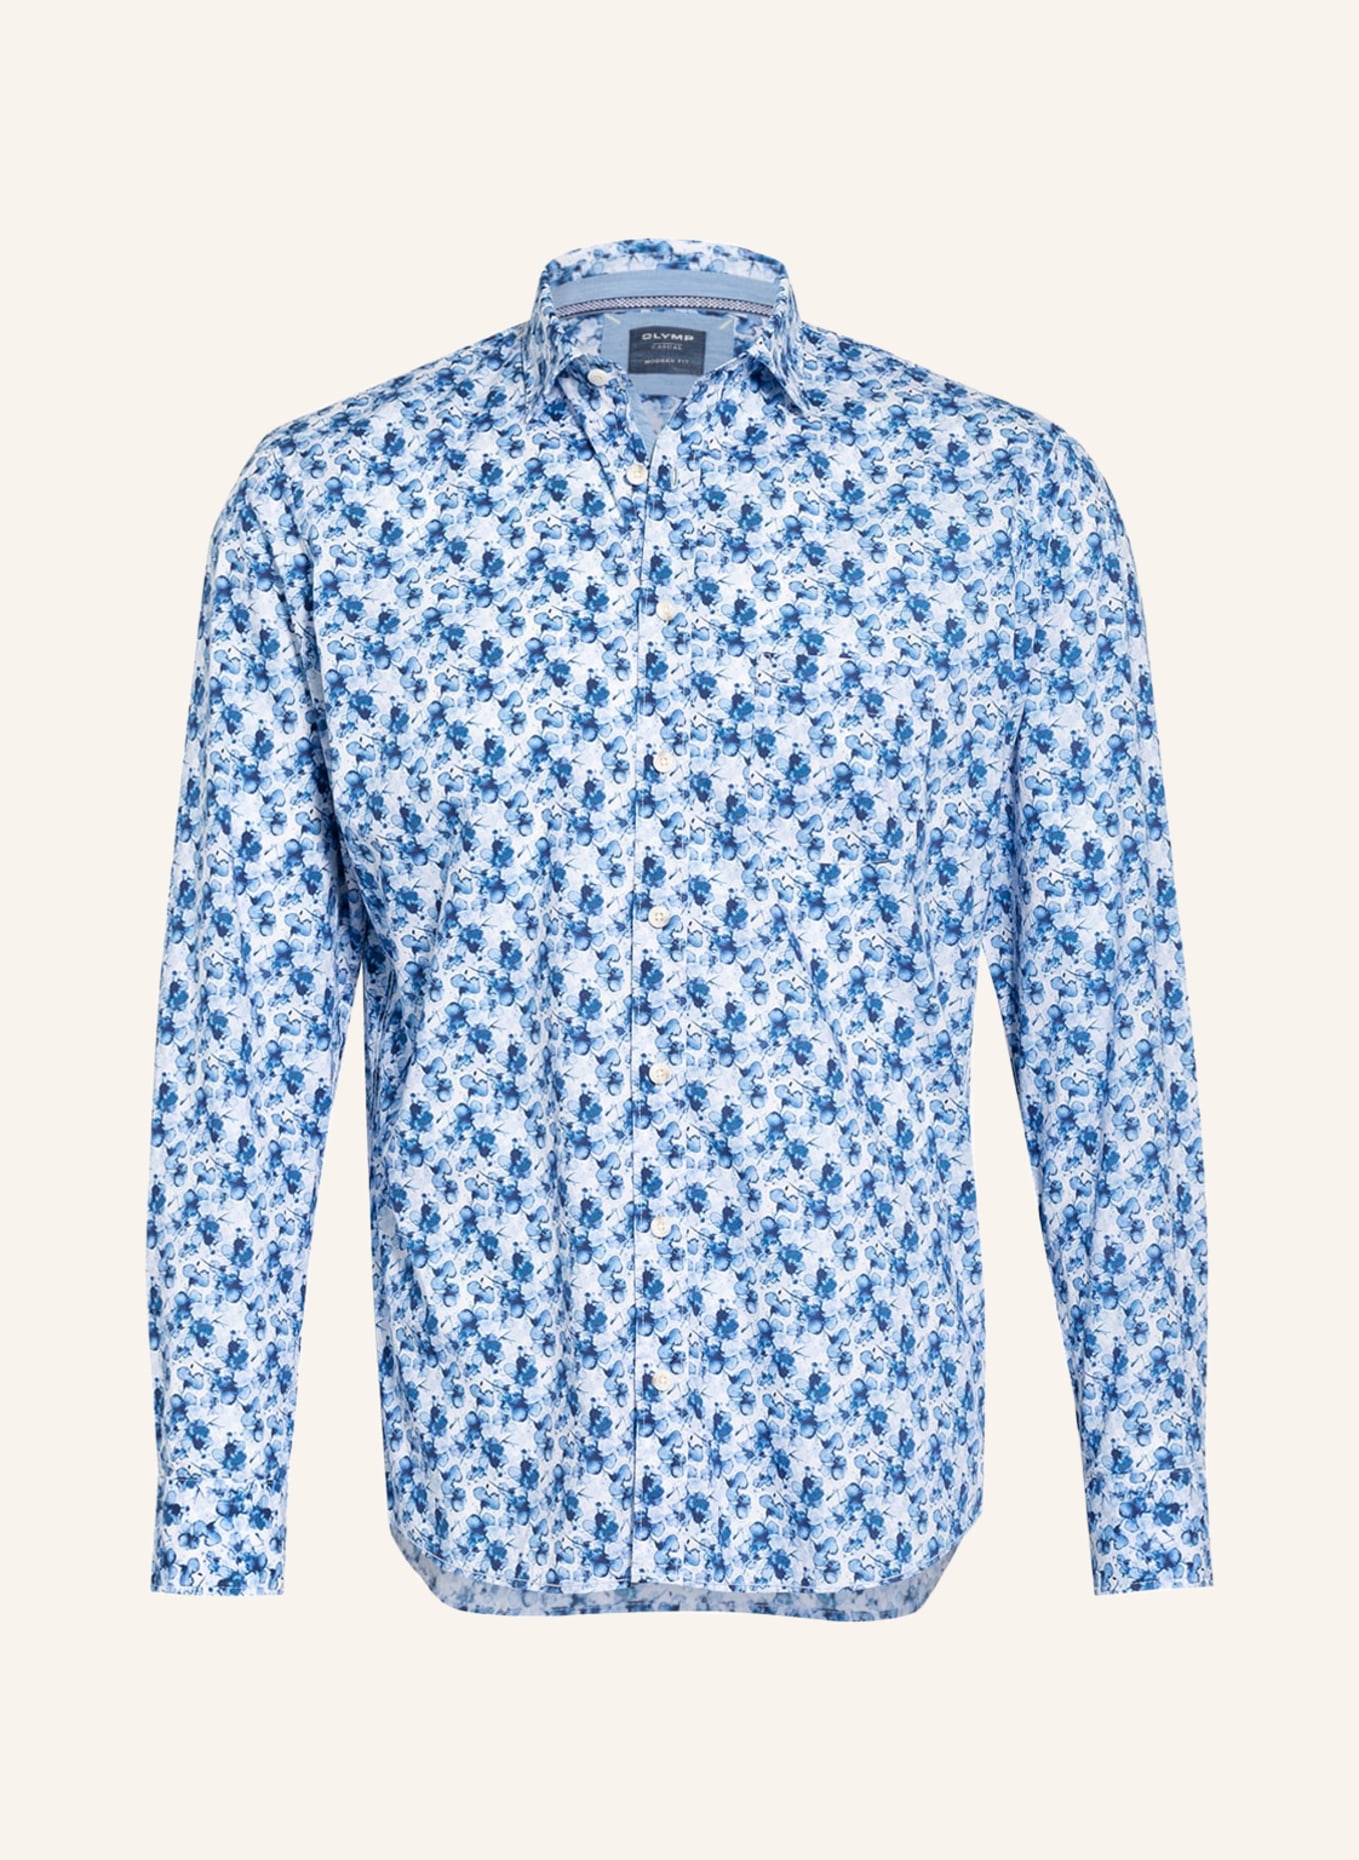 OLYMP hellblau fit Hemd weiss/ blau/ in Casual modern